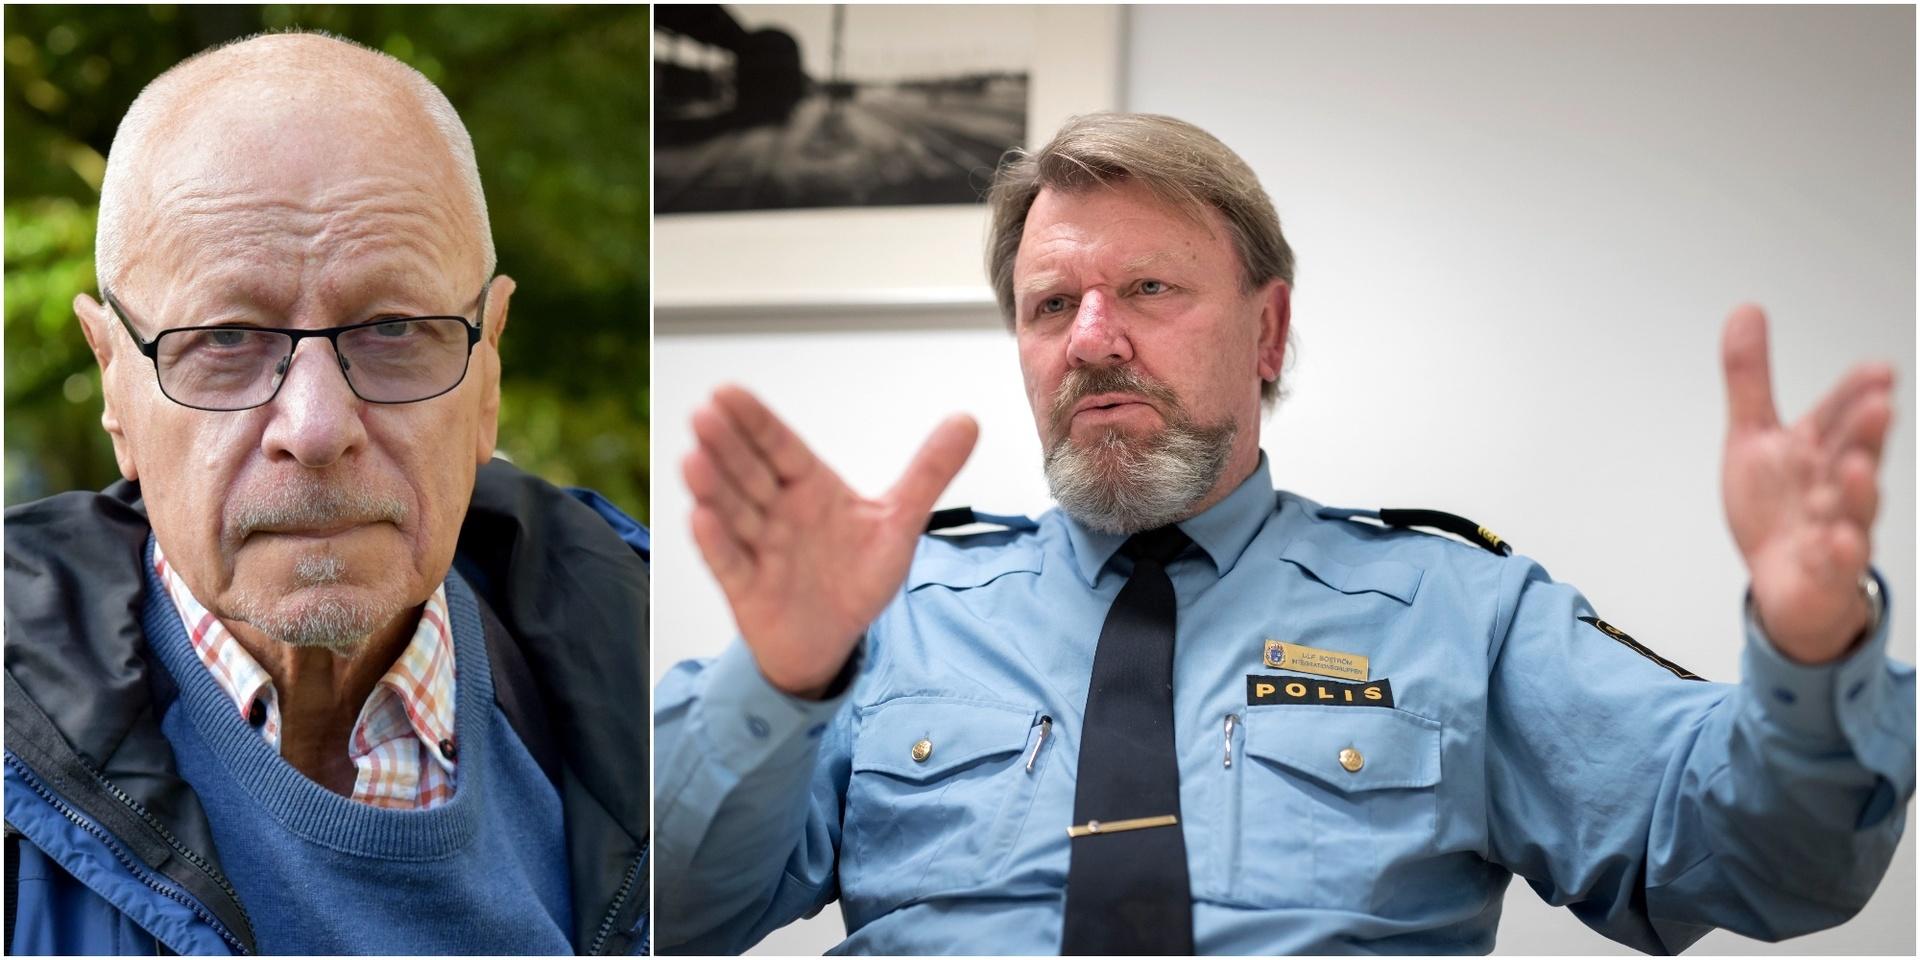 Boström visar medkänsla för brottsoffren och besvikelse över polismyndighetens otillräcklighet, skriver Sven-Erik Alhem.